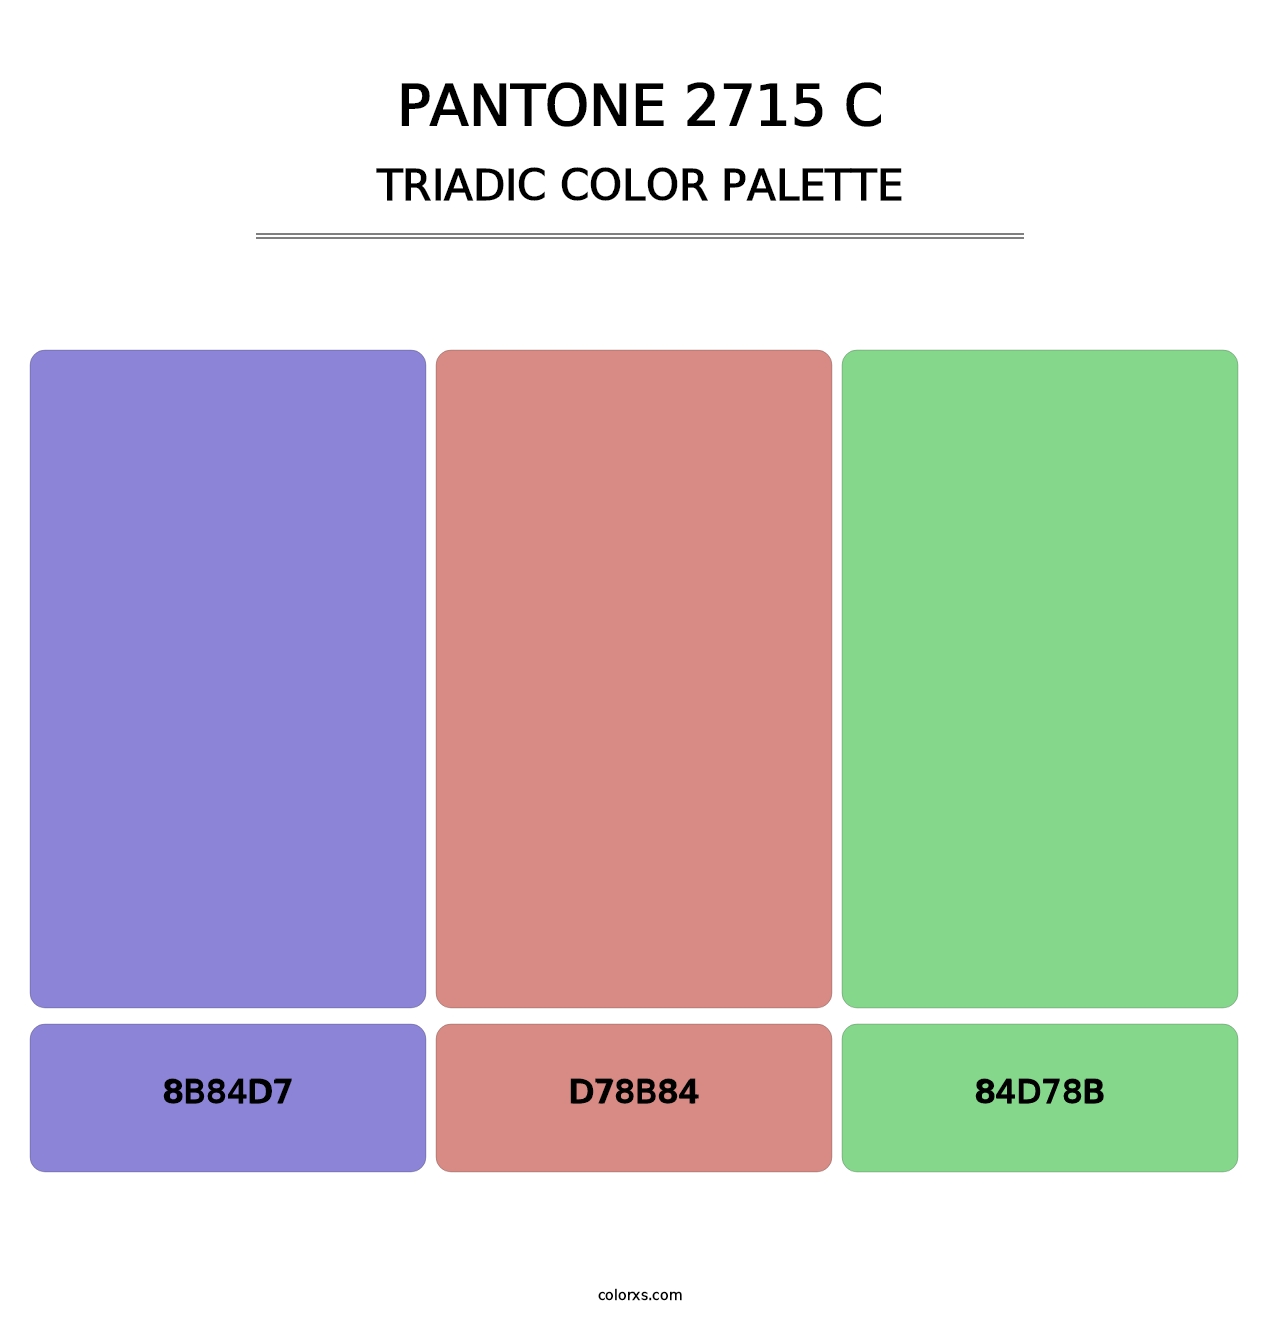 PANTONE 2715 C - Triadic Color Palette